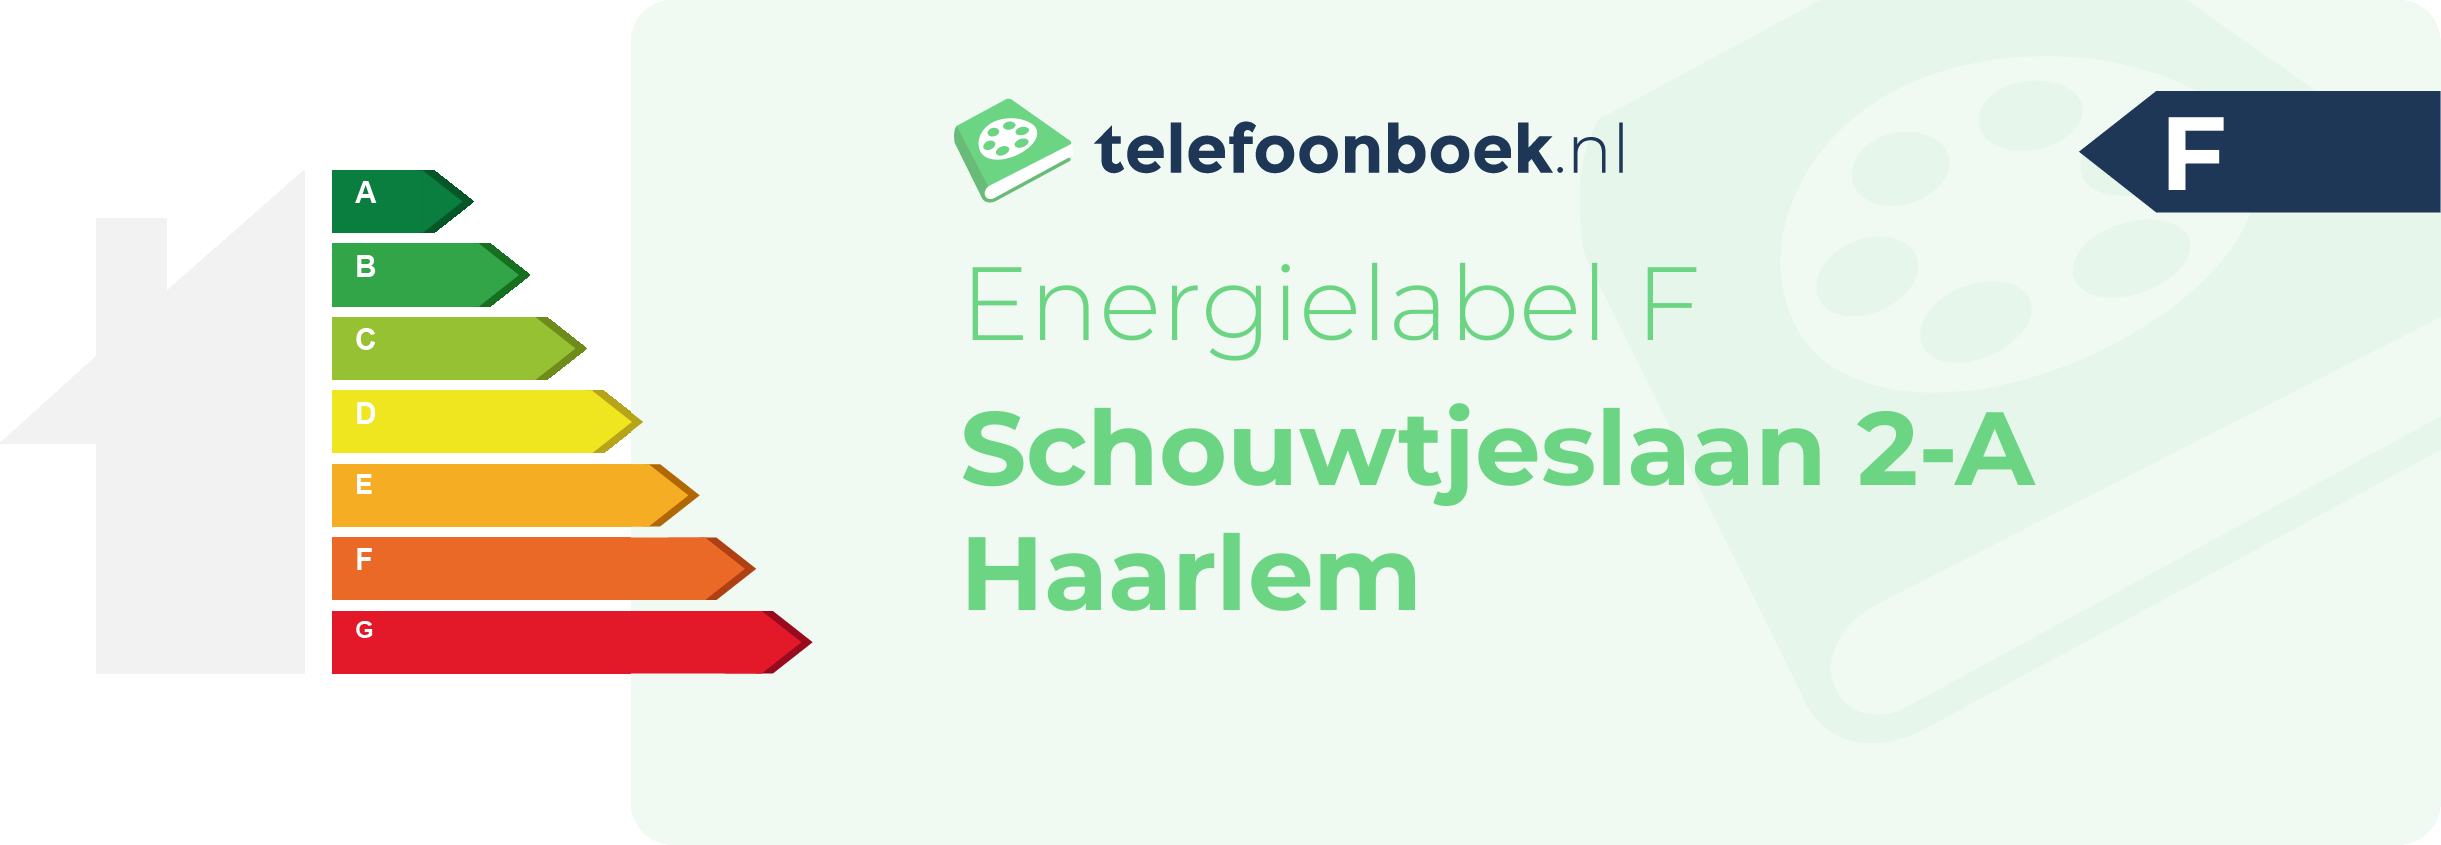 Energielabel Schouwtjeslaan 2-A Haarlem